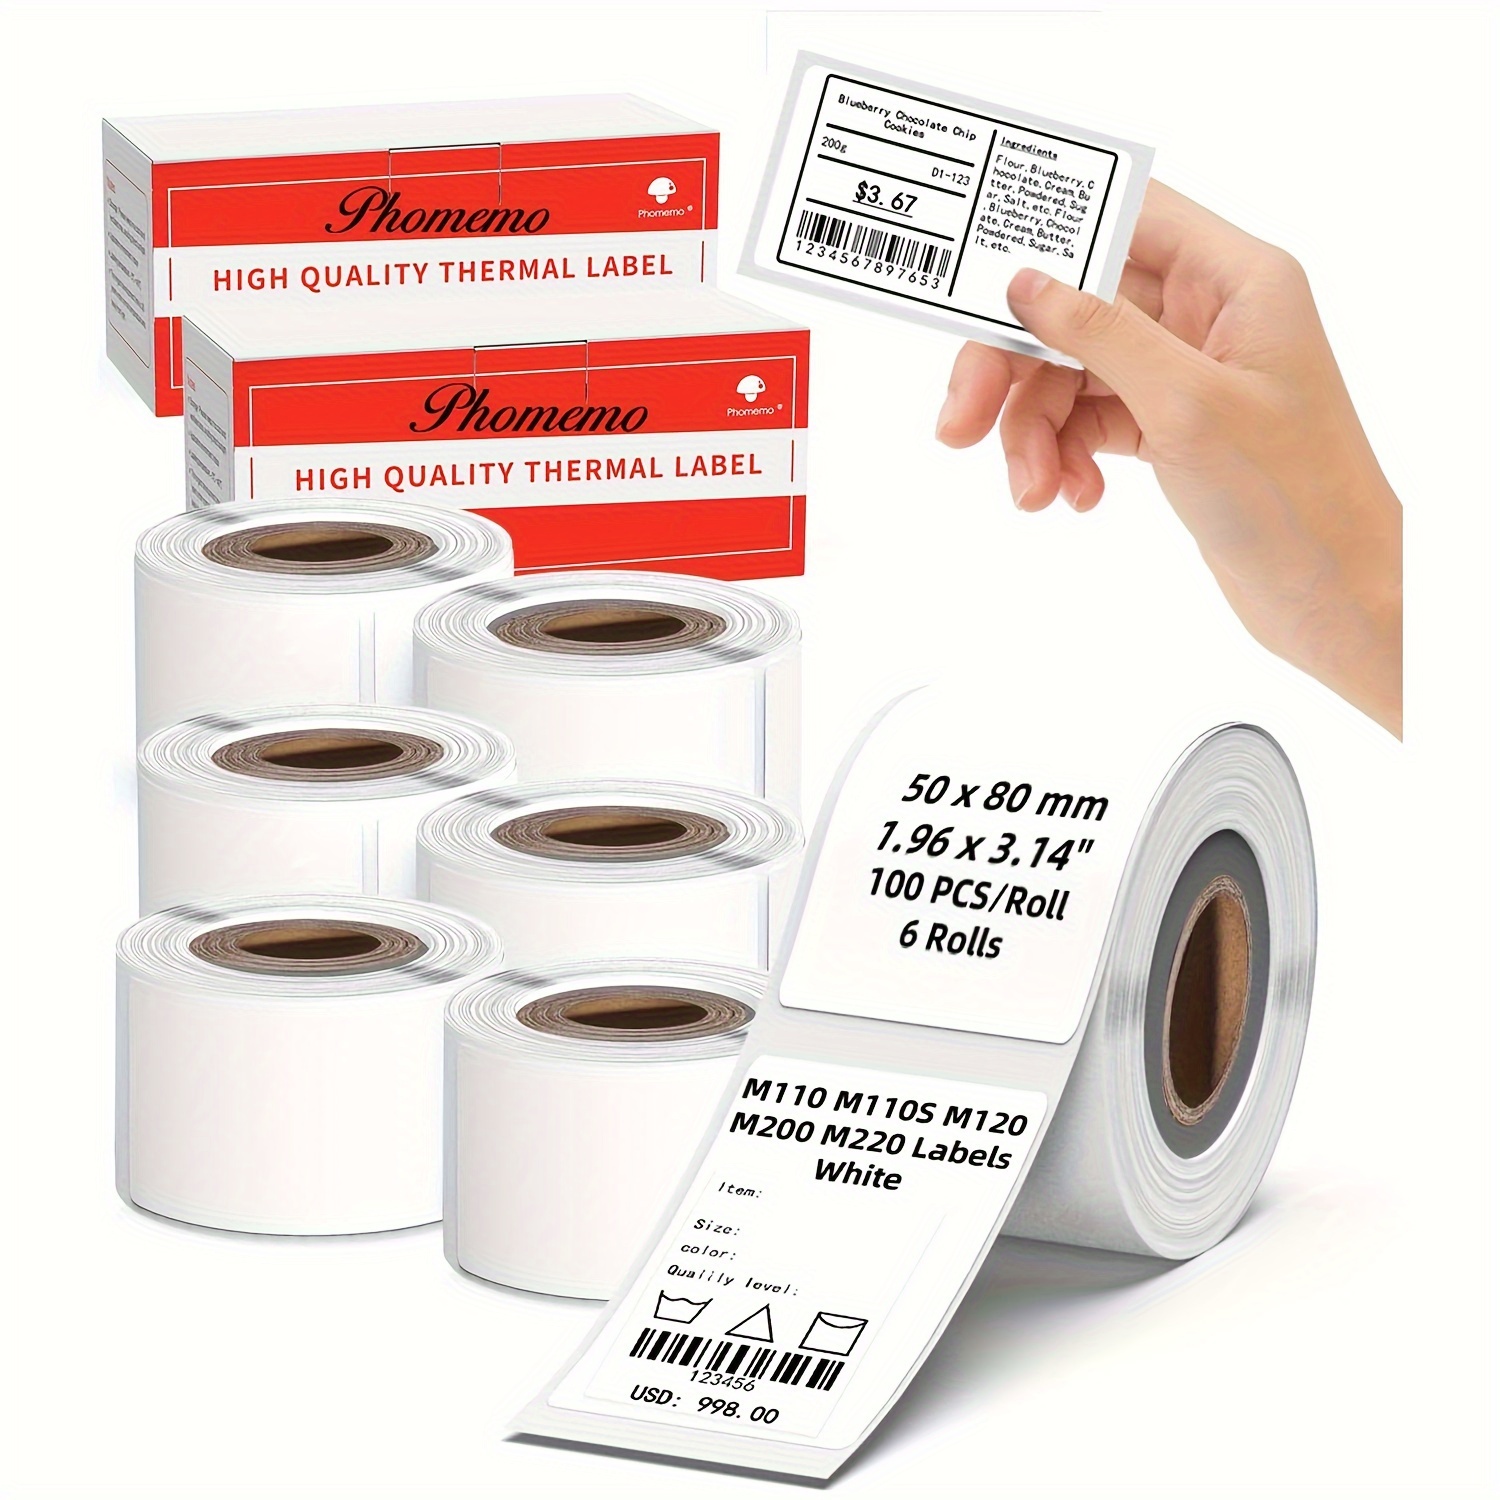 Rotolo di etichette adesive, 30x20mm, 320 pz/rotolo, Bianco - NIIMBOT